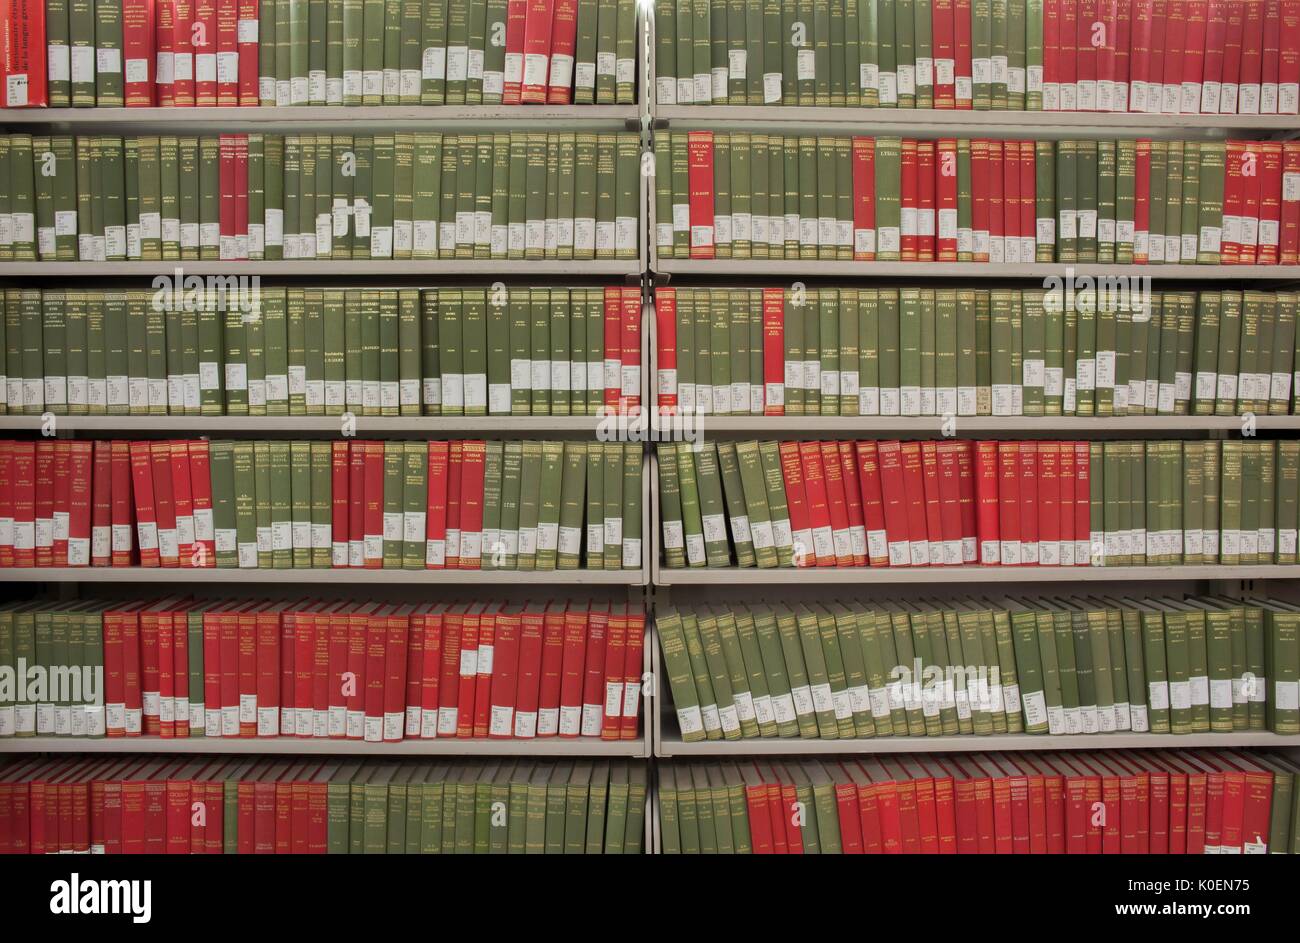 Regale voller Bücher auf D-Ebene, einem untersten Stockwerk der Milton S. Eisenhower Library auf dem Homewood Campus der Johns Hopkins University in Baltimore, Maryland, 2014. Mit Freundlicher Genehmigung Von Eric Chen. Stockfoto